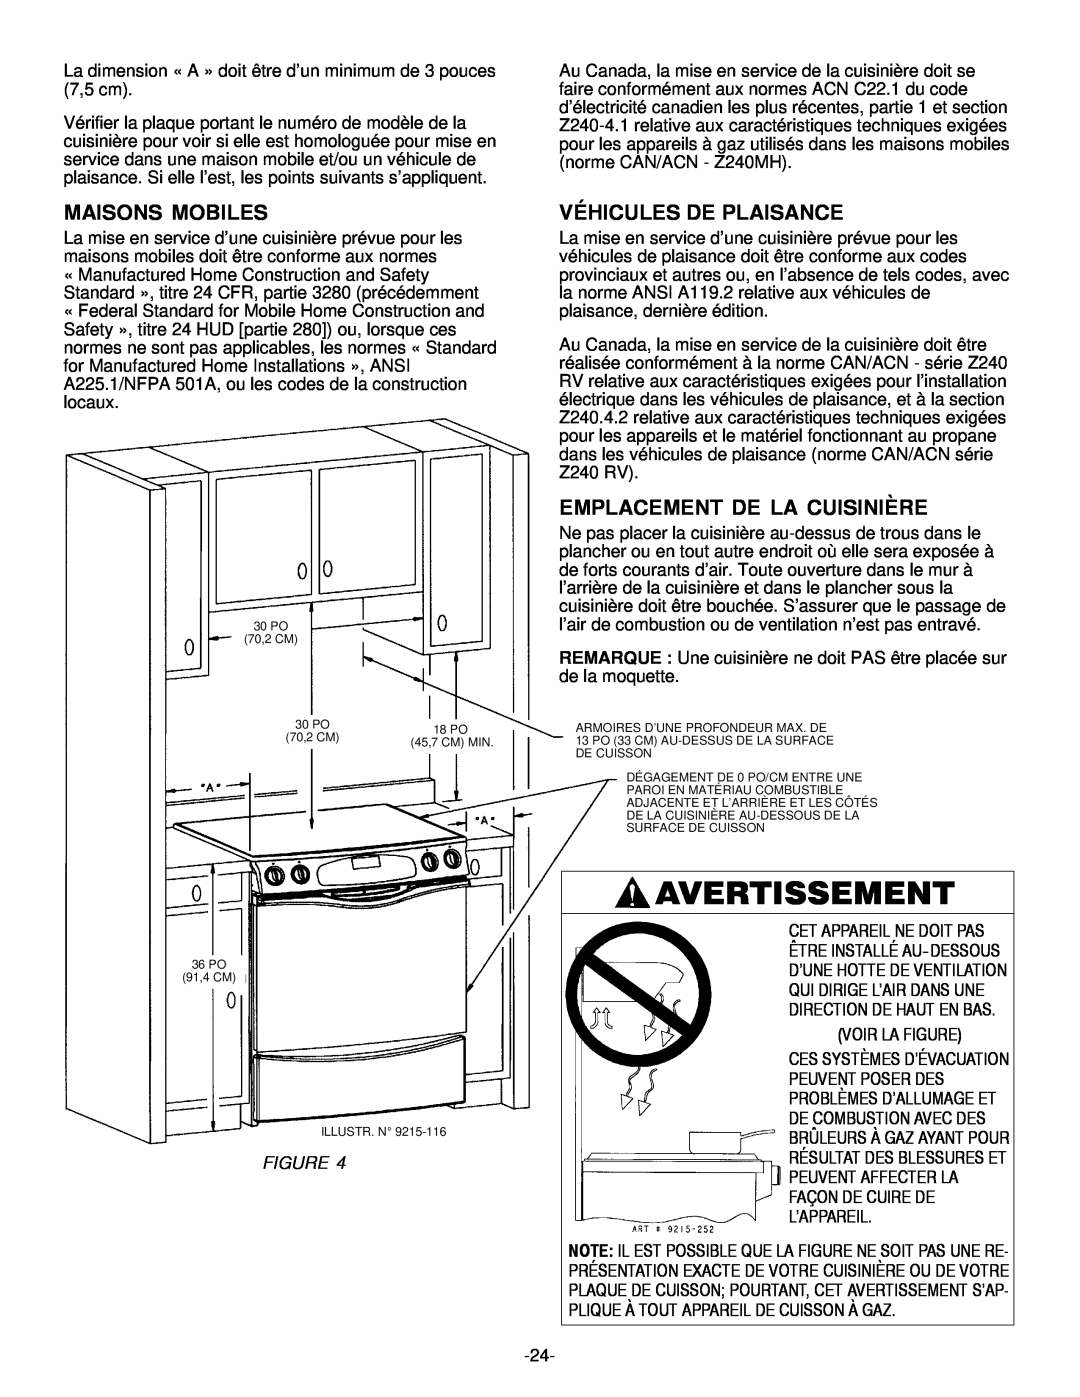 Jenn-Air Range installation manual Avertissement, Maisons Mobiles, Véhicules De Plaisance, Emplacement De La Cuisinière 